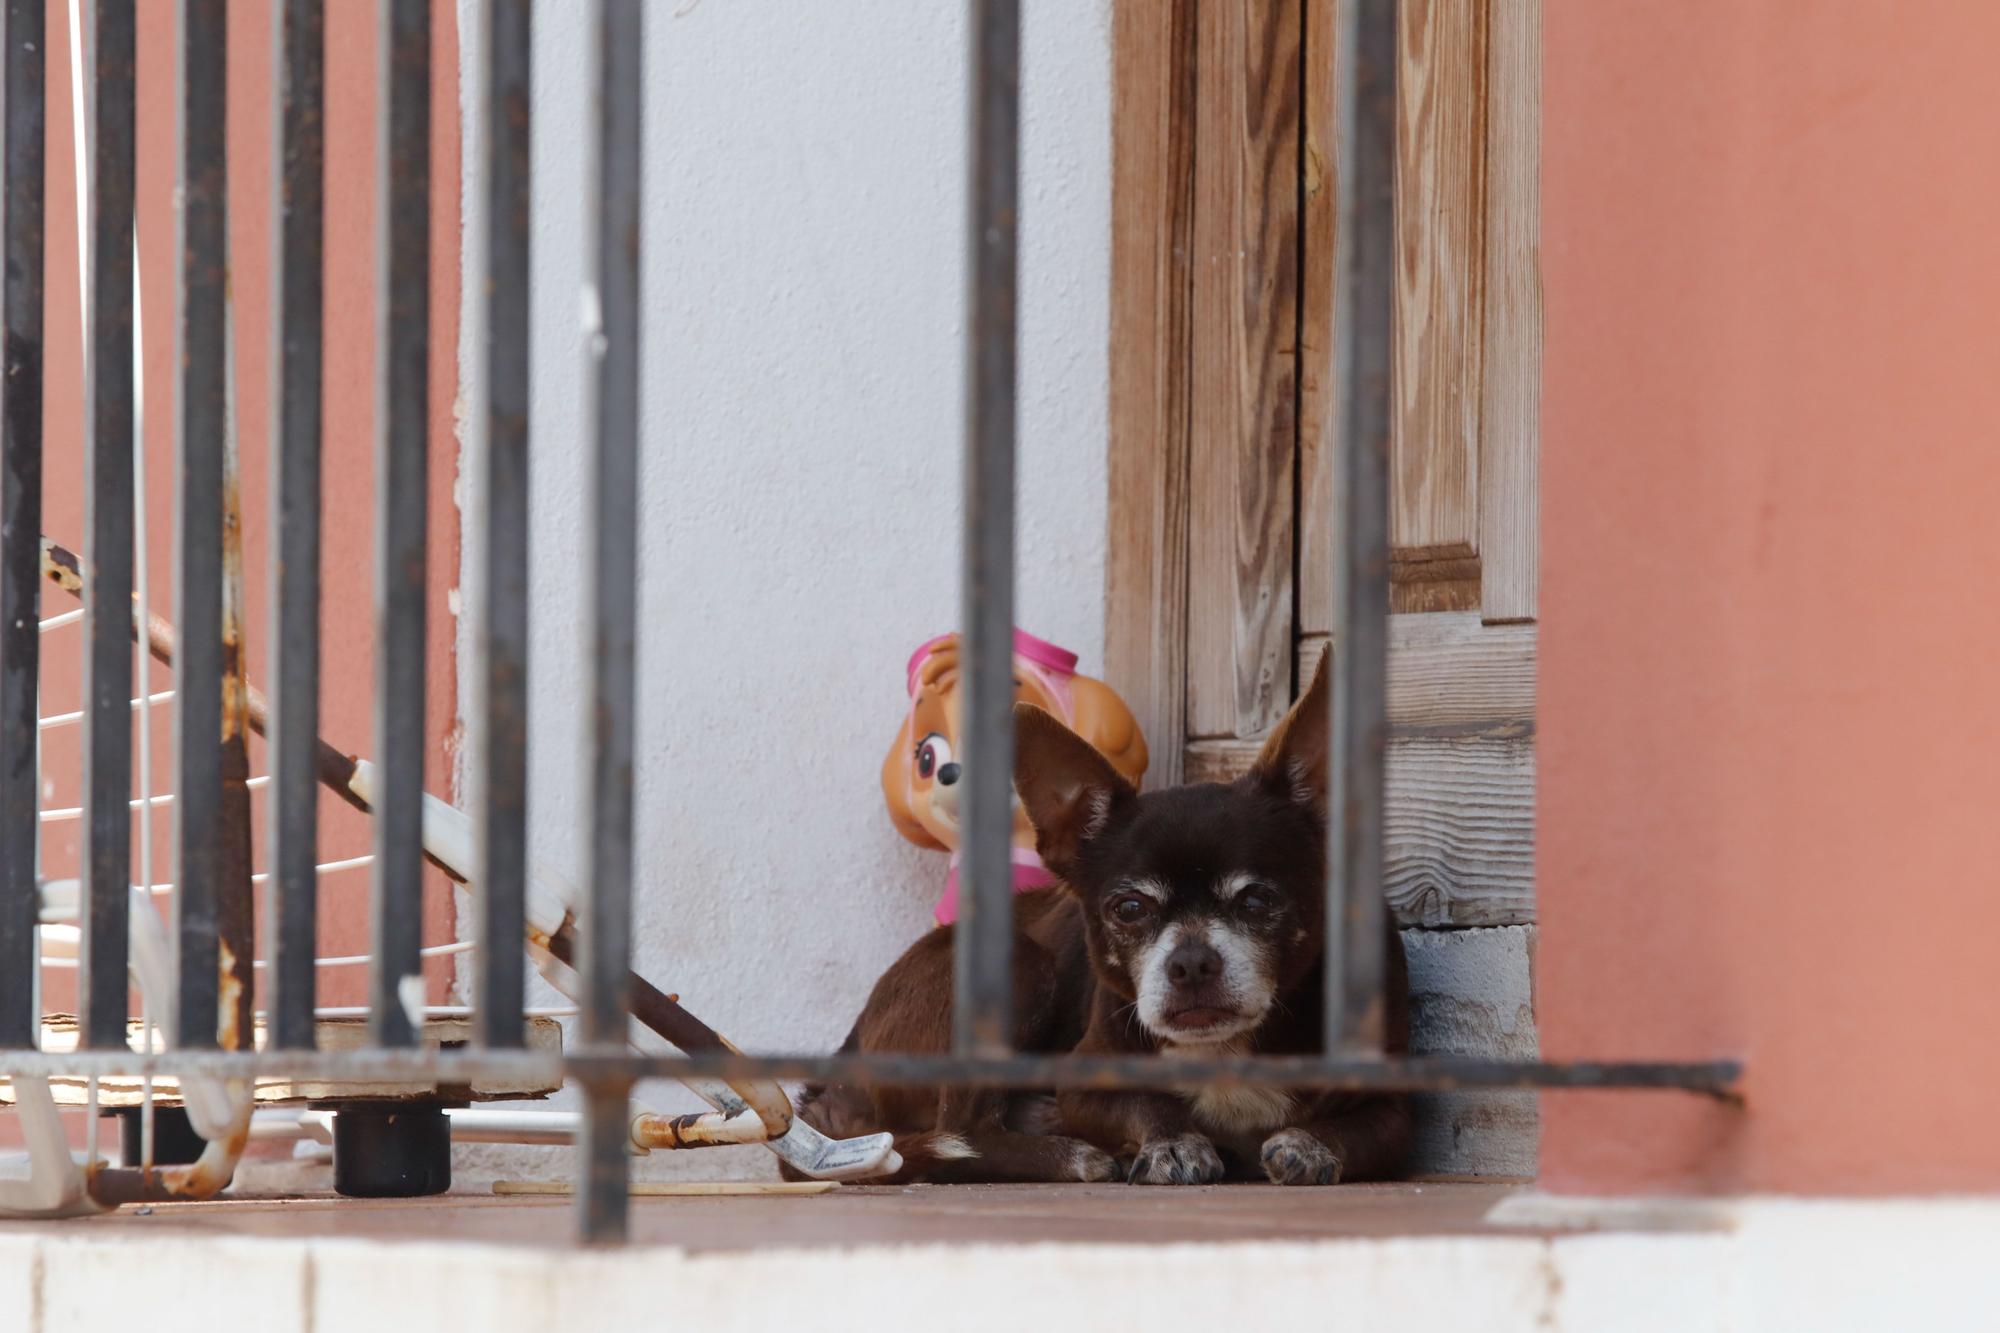 Desahucio de una familia con tres hijos en el barrio de Sa Penya de Ibiza